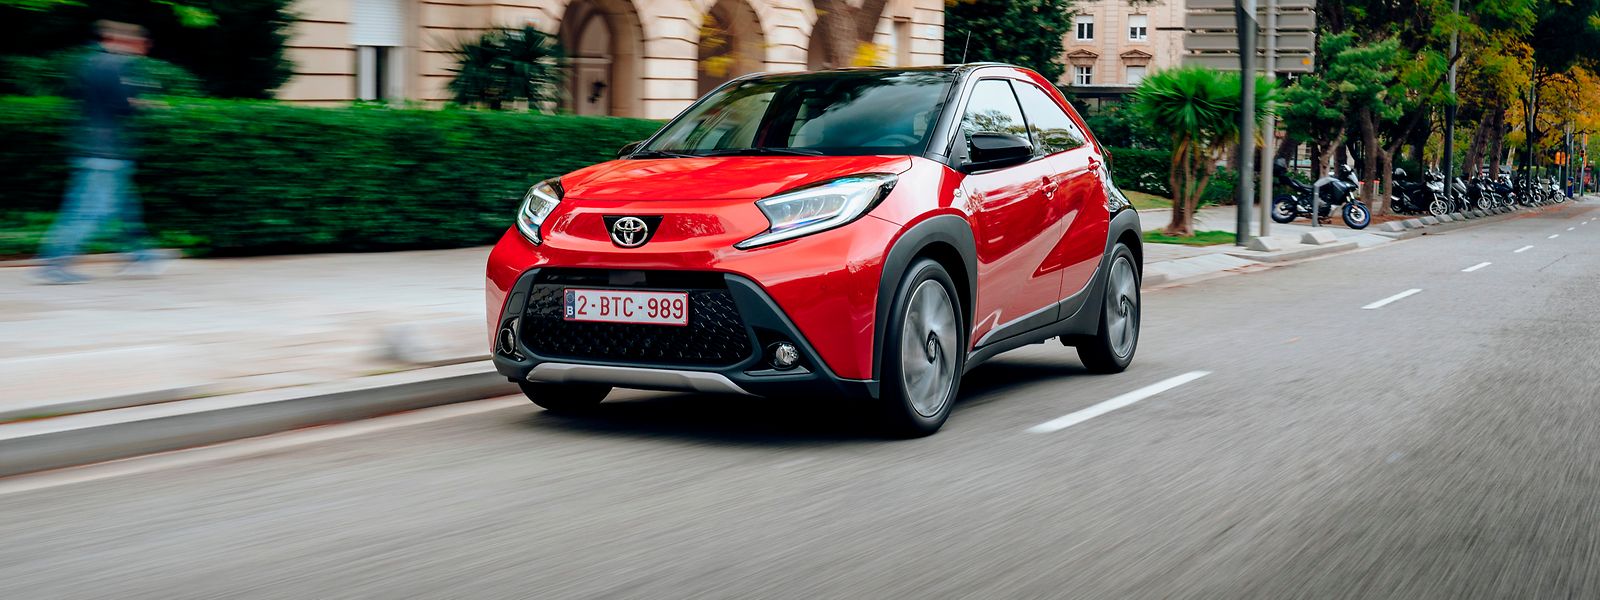 Die einen nennen es Rot, Toyota nennt es Chili: Der Aygo X macht in Farben, die von Gewürzpflanzen abgeleitet sind, demnächst die Straßen unsicher.